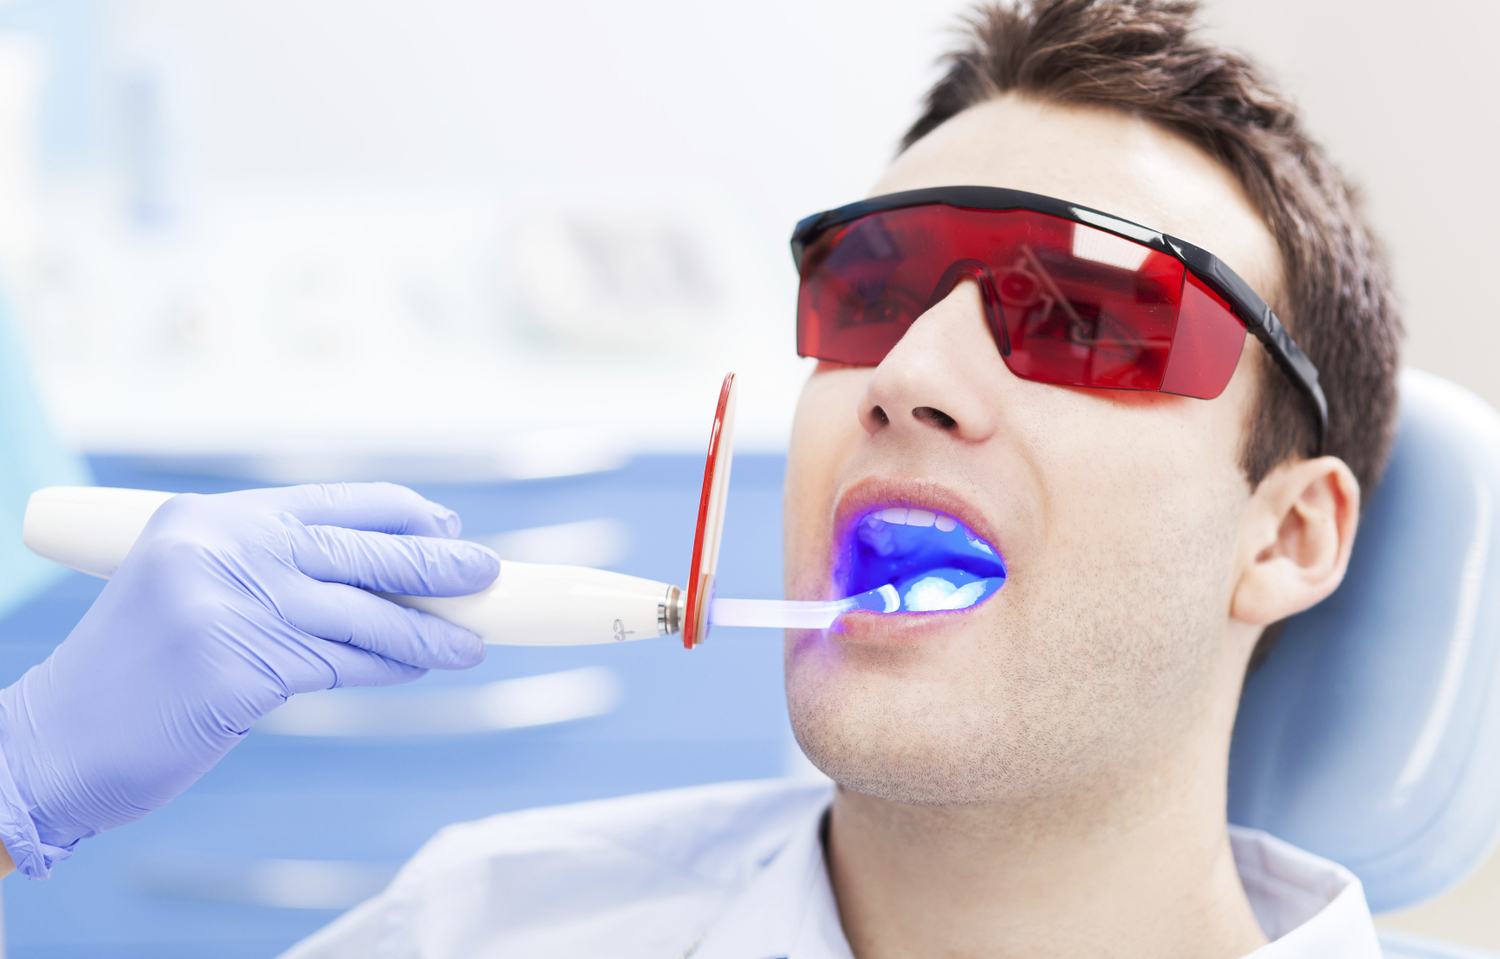 Tẩy trắng răng với công nghệ hiện đại, an toàn cho sức khỏe